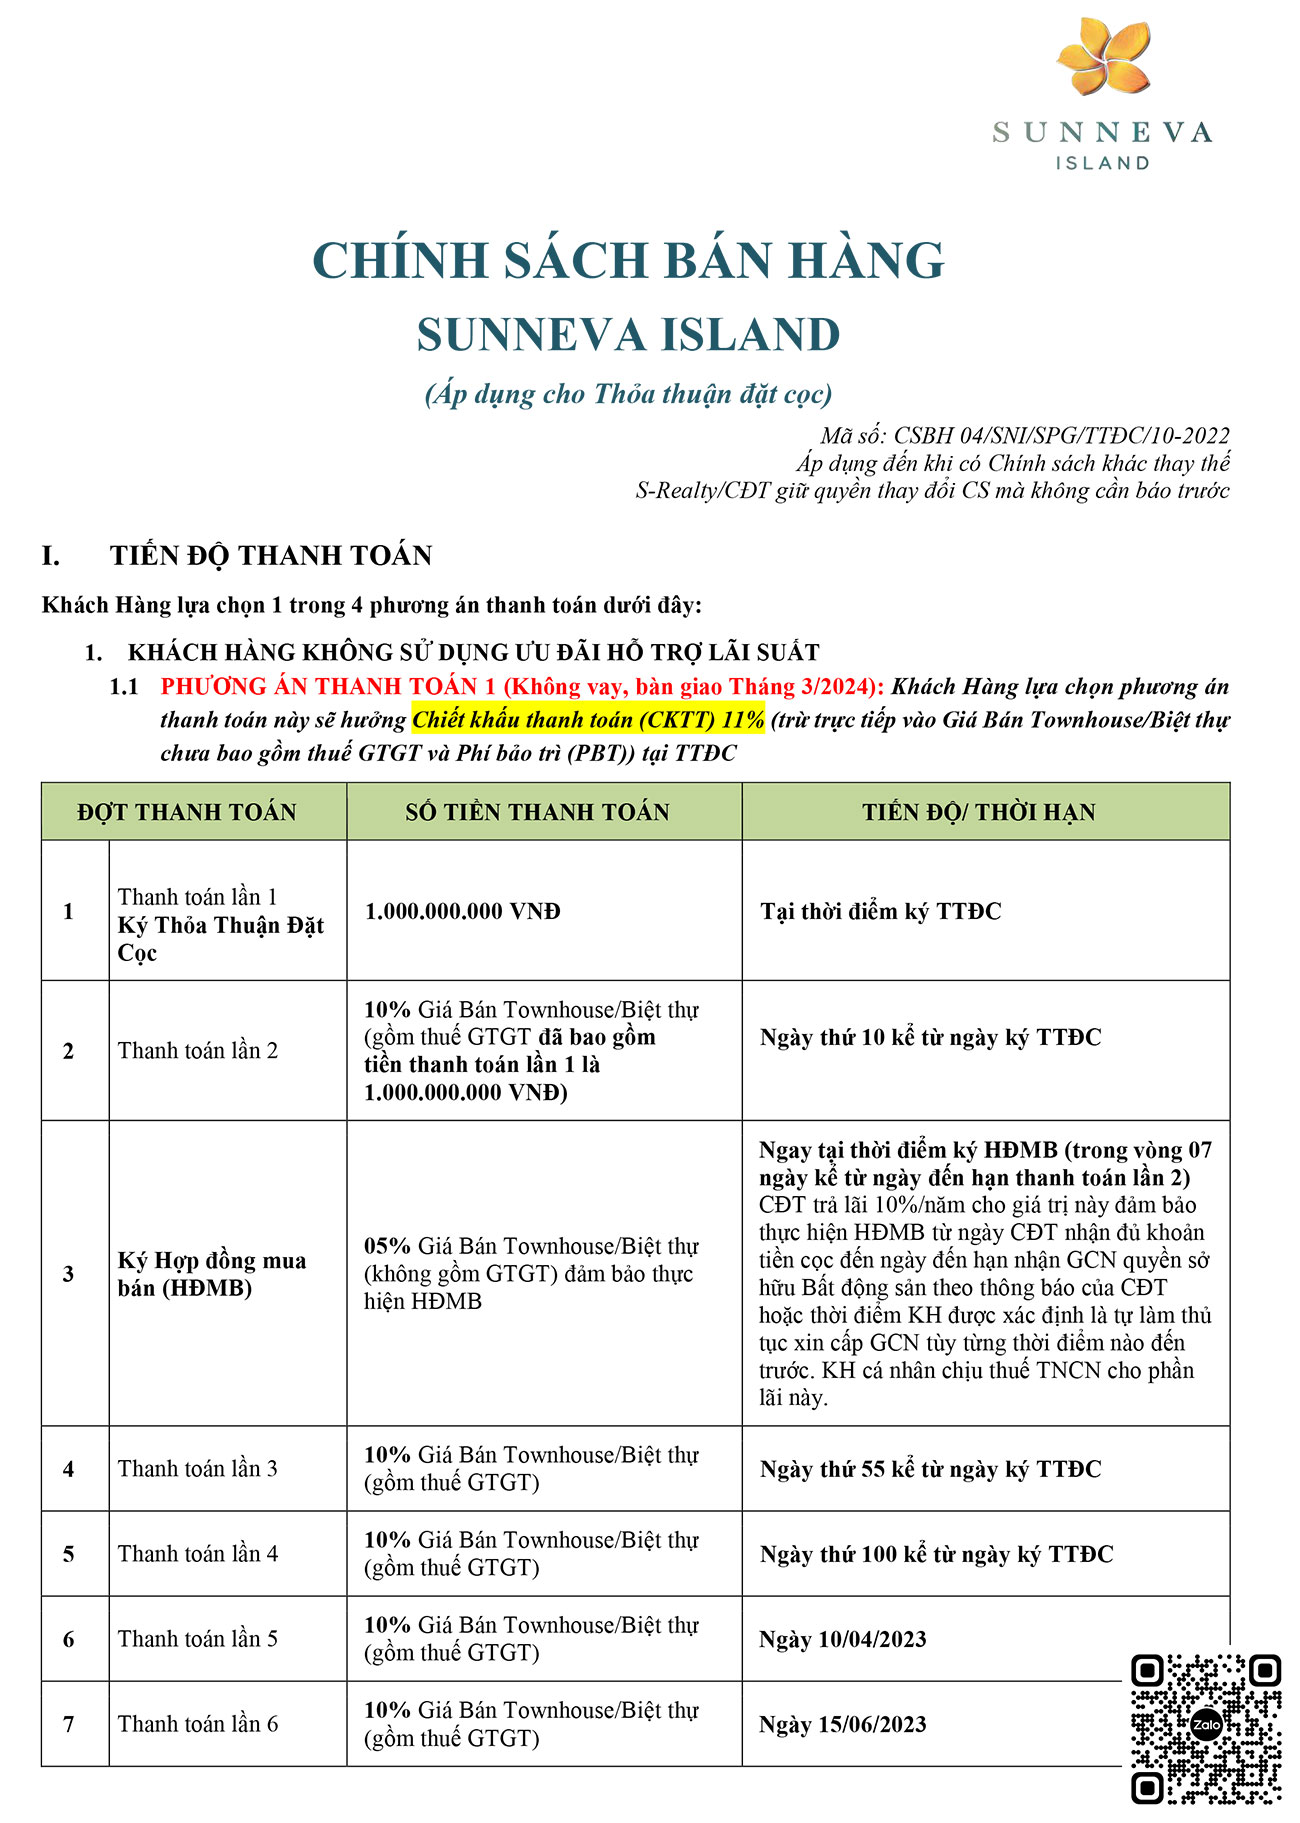 Chính sách thanh toán và ưu đãi mới nhất dự án Sunneva Island.